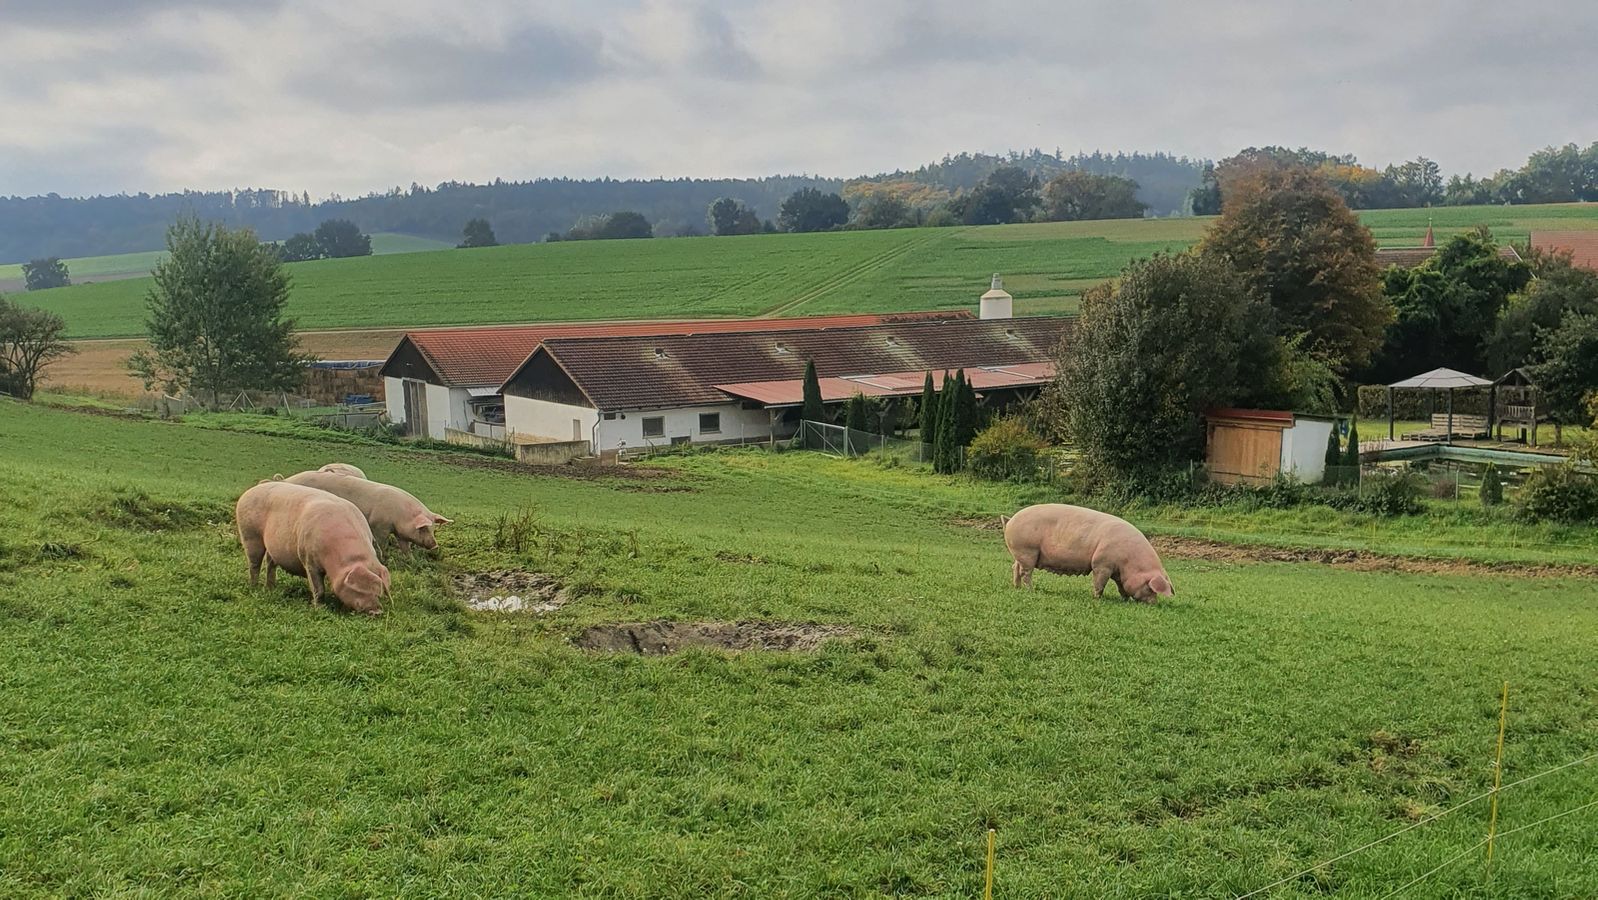 Weideschweine in Bayern - Frischluft auch für Ferkel